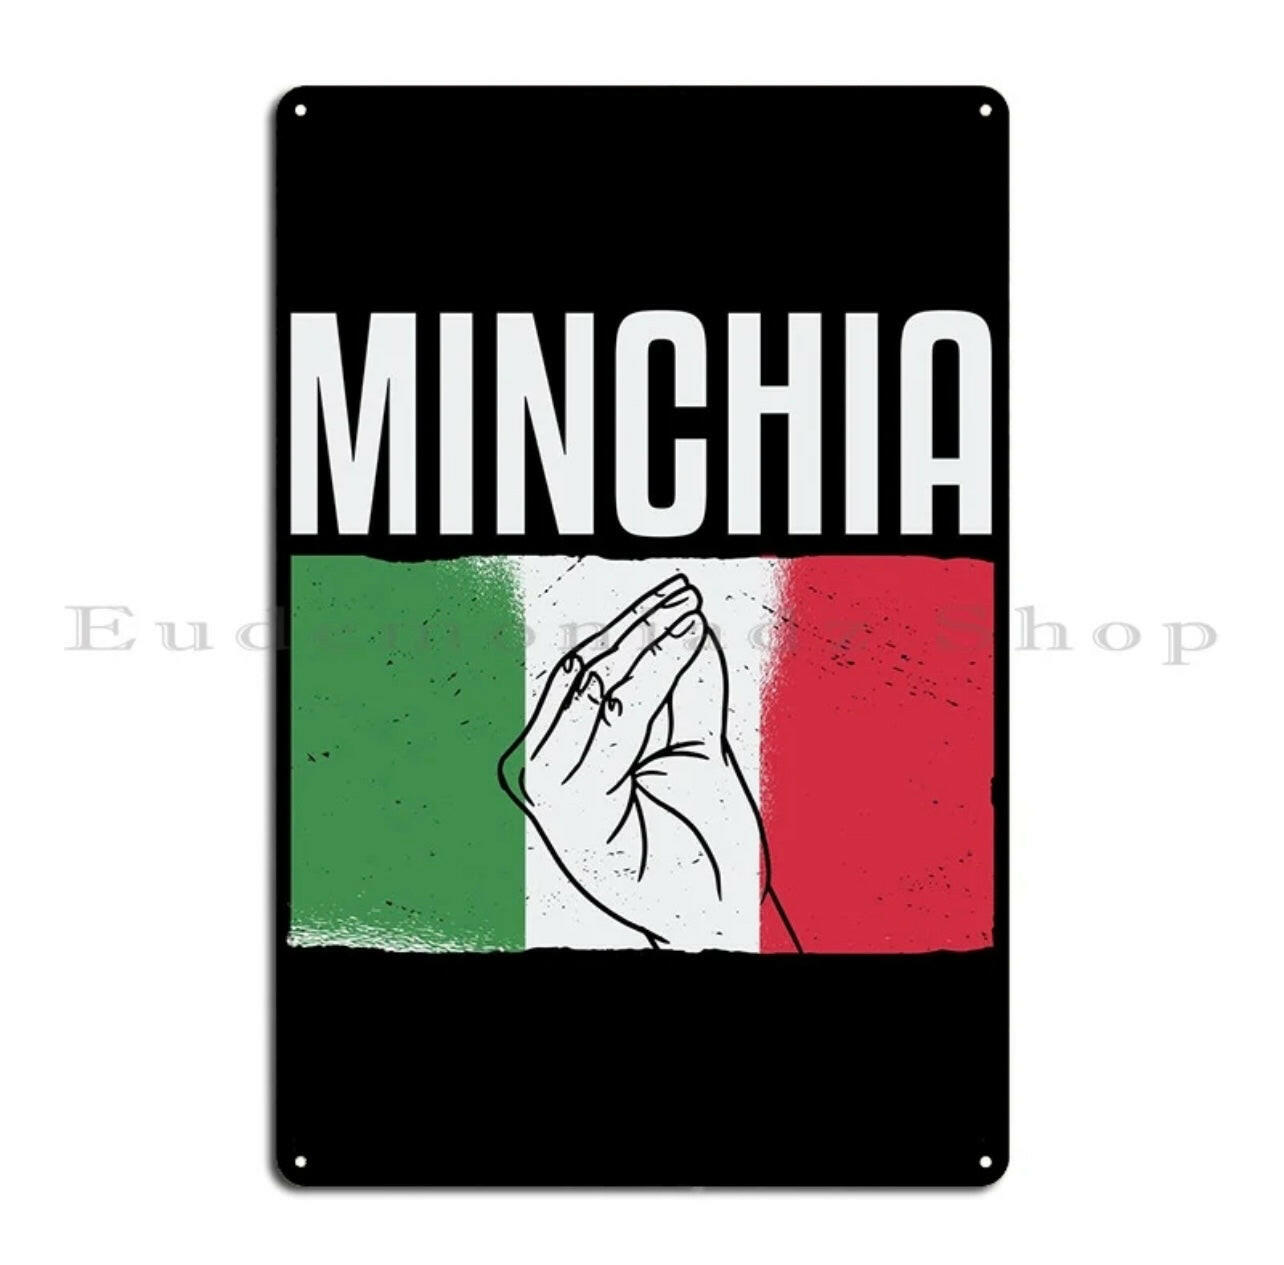 Minchia Metal Tin Sign.